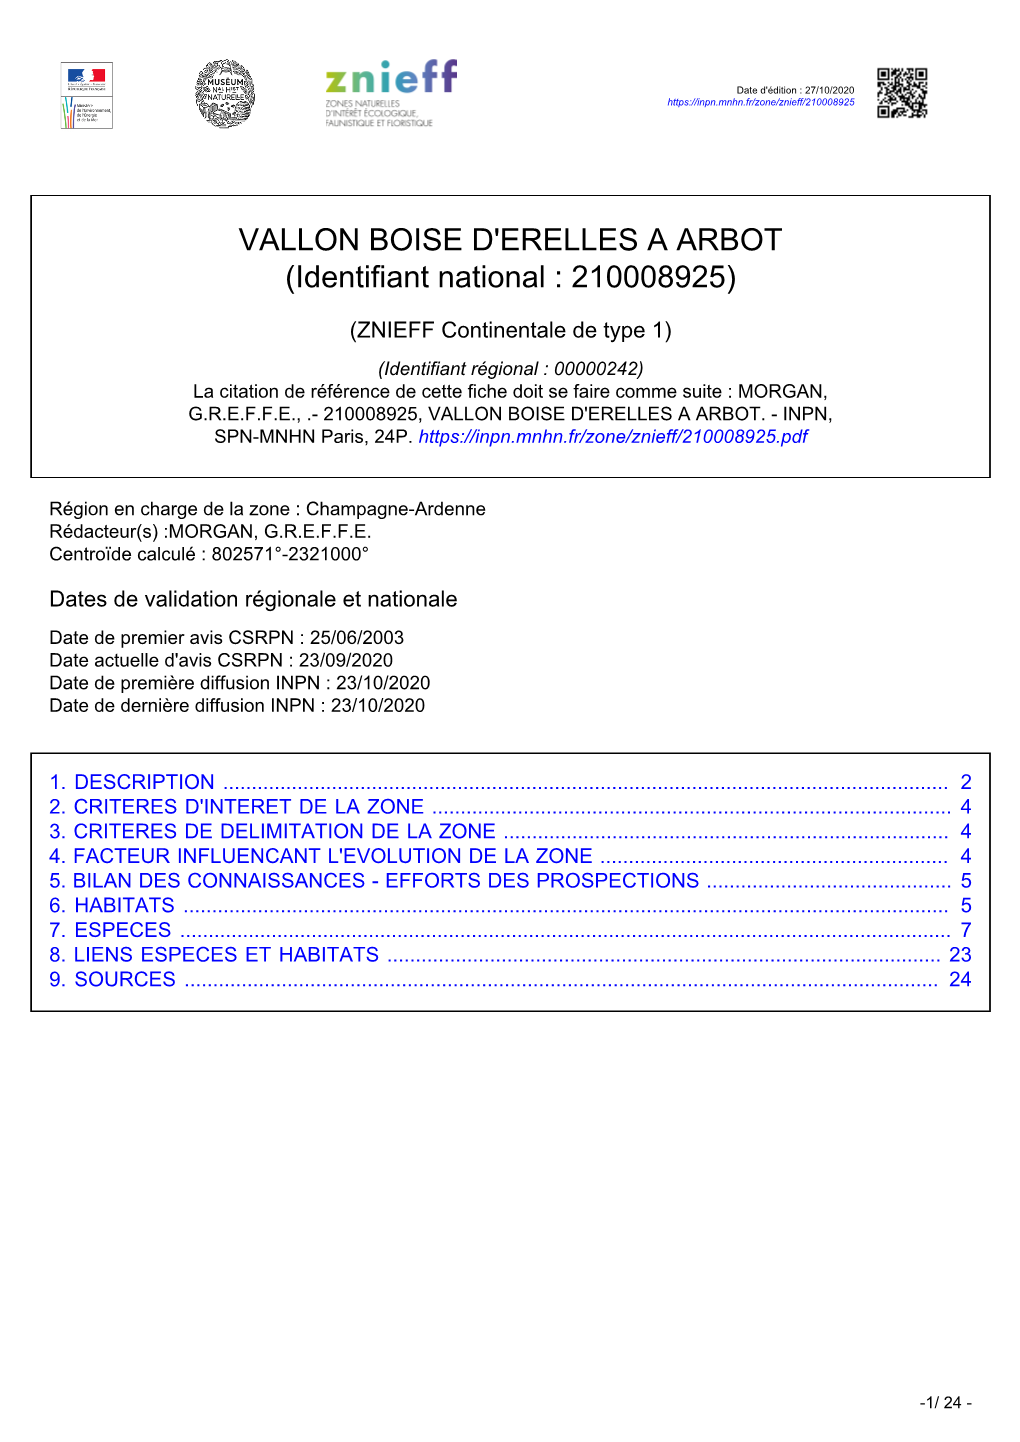 VALLON BOISE D'erelles a ARBOT (Identifiant National : 210008925)